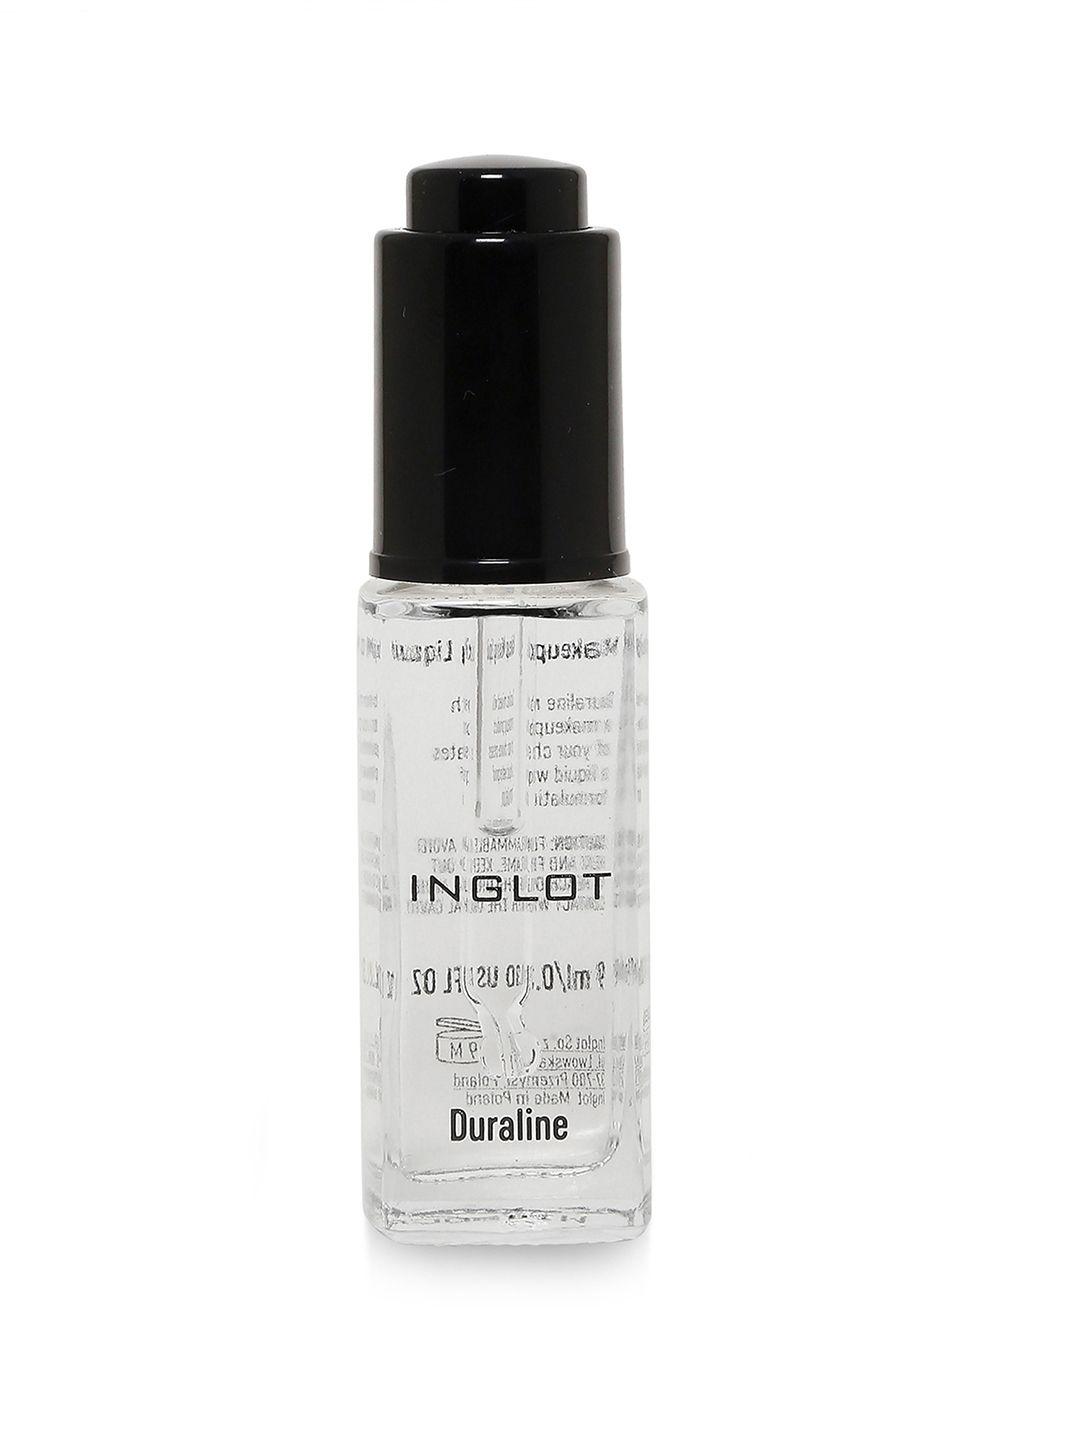 inglot duraline makeup mixing liquid 9 ml